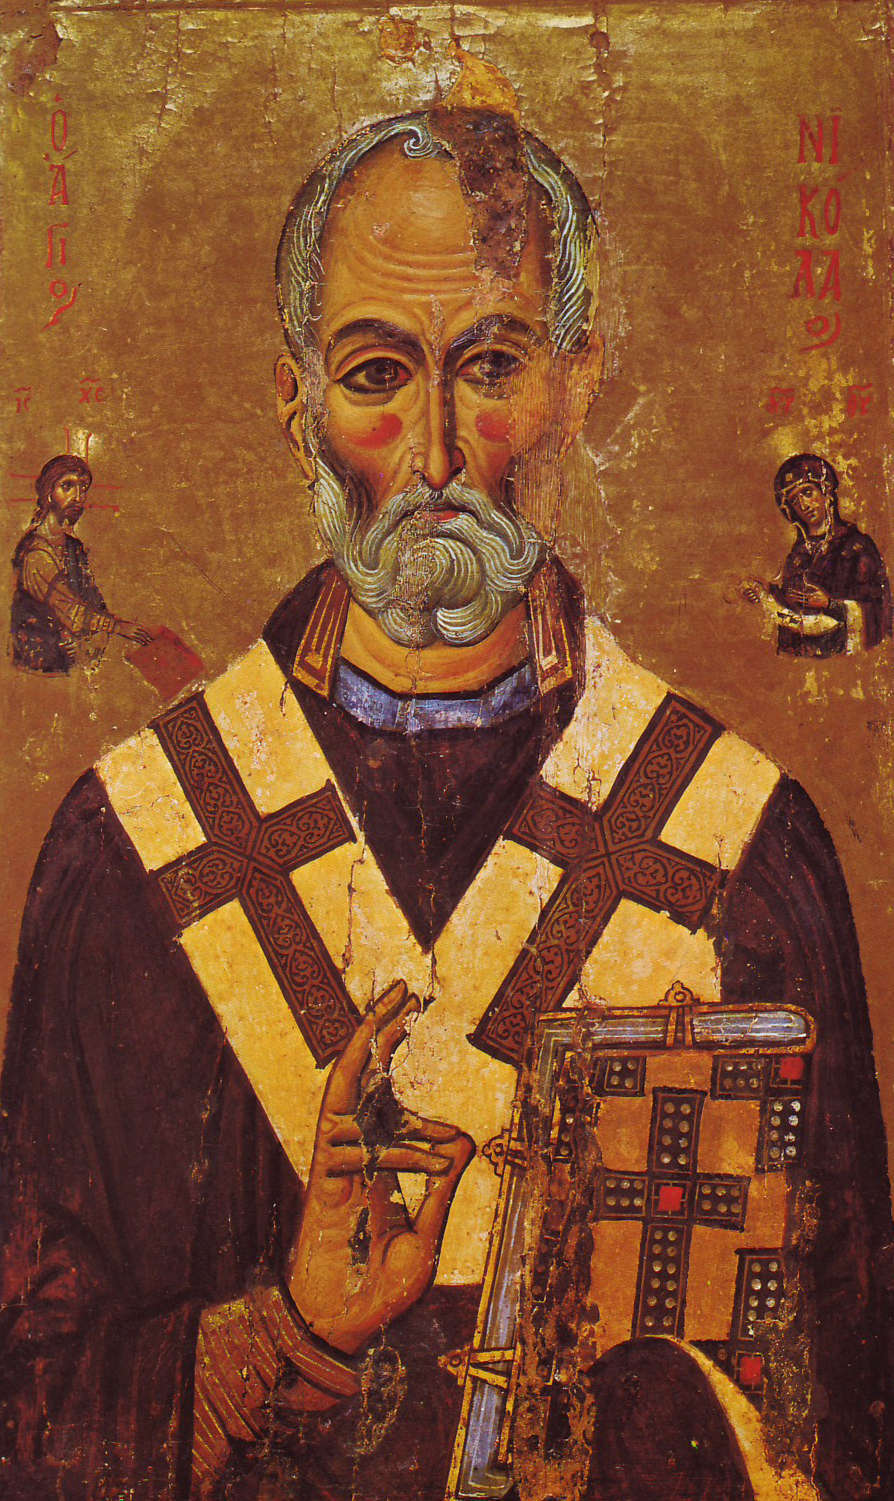 Святитель Николай (икона из монастыря Святой Екатерины, XIII век). Фото: Википедия